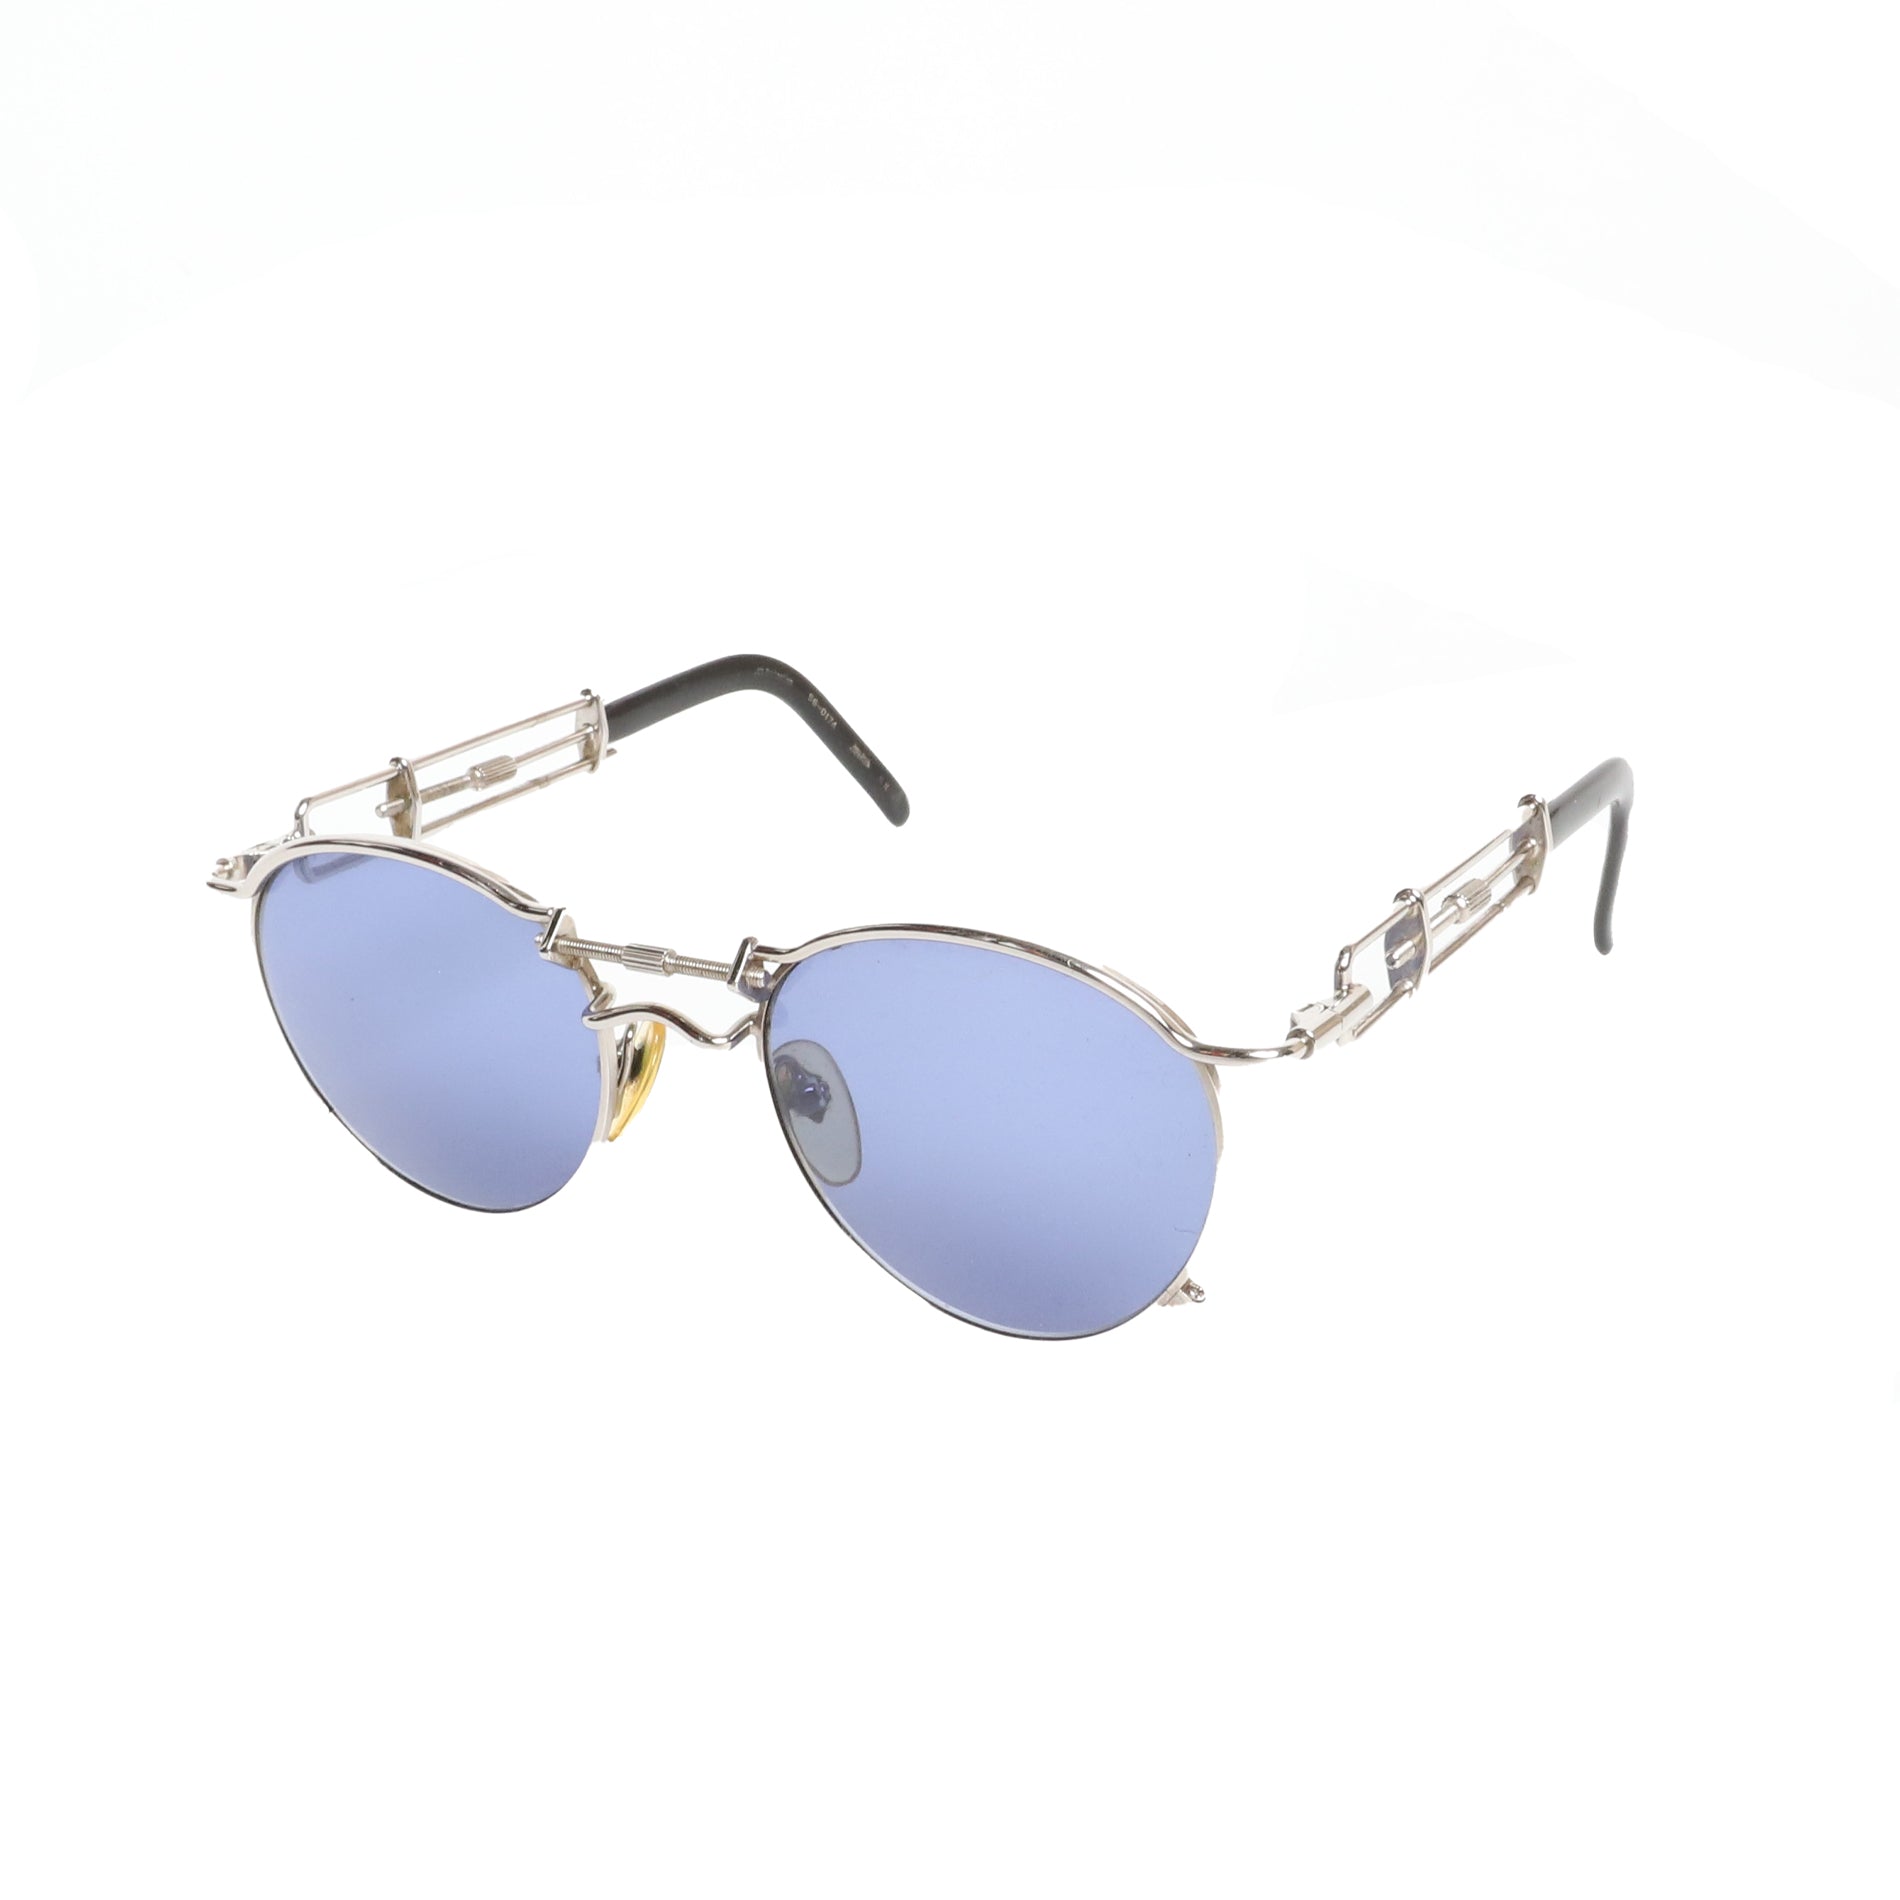 Jean Paul Gaultier 1991 Sunglasses "56-0174"